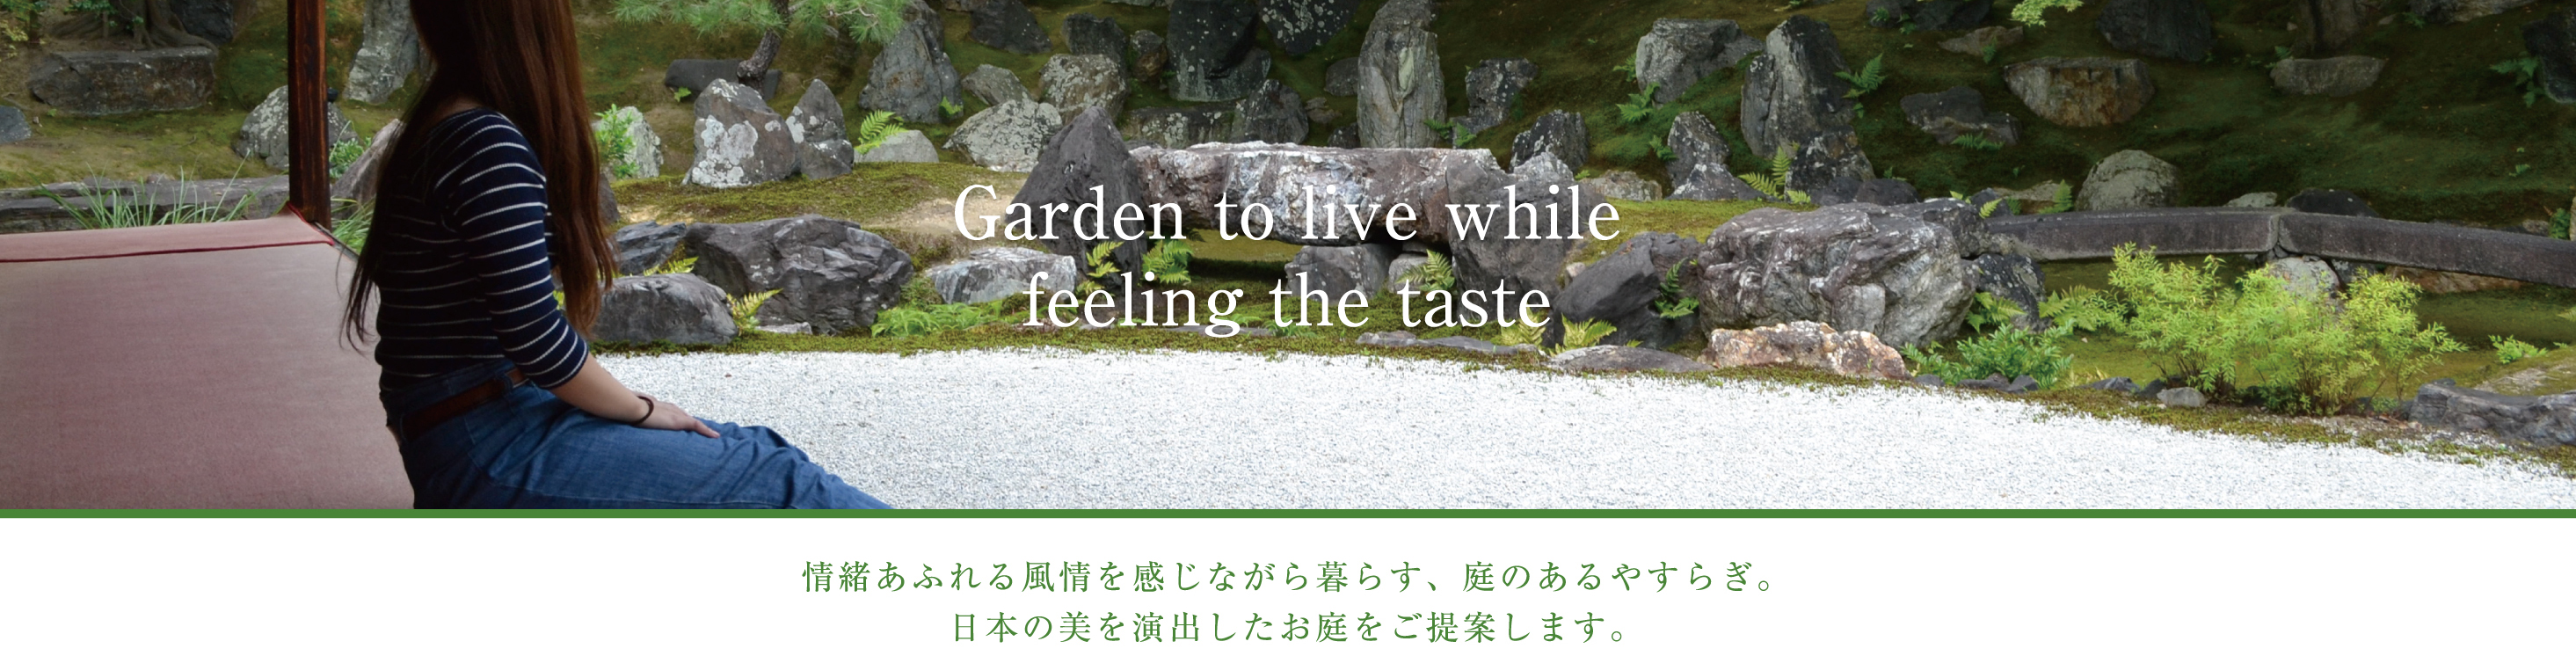 情緒あふれる風情を感じながら暮らす、庭のあるやすらぎ。日本伸びを演出したお庭をご提案します。